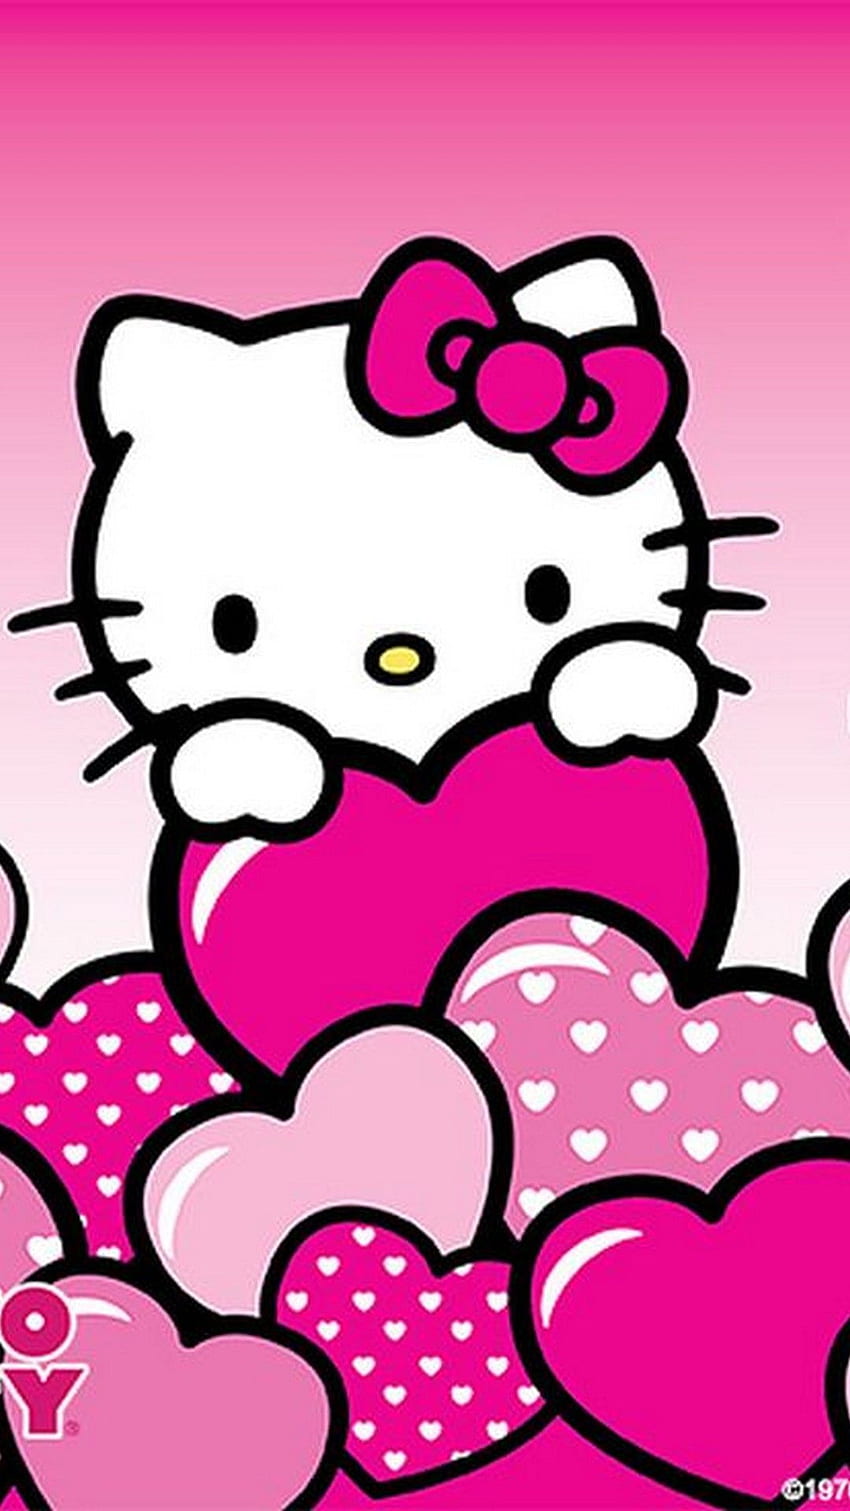 Chào mừng đến với thế giới của Hello Kitty - chú mèo xinh đẹp và đáng yêu nhất! Bức ảnh liên quan đến chủ đề này sẽ khiến bạn ngay lập tức yêu thích Hello Kitty hơn. Bạn sẽ không thể rời khỏi bức ảnh xinh đẹp này.